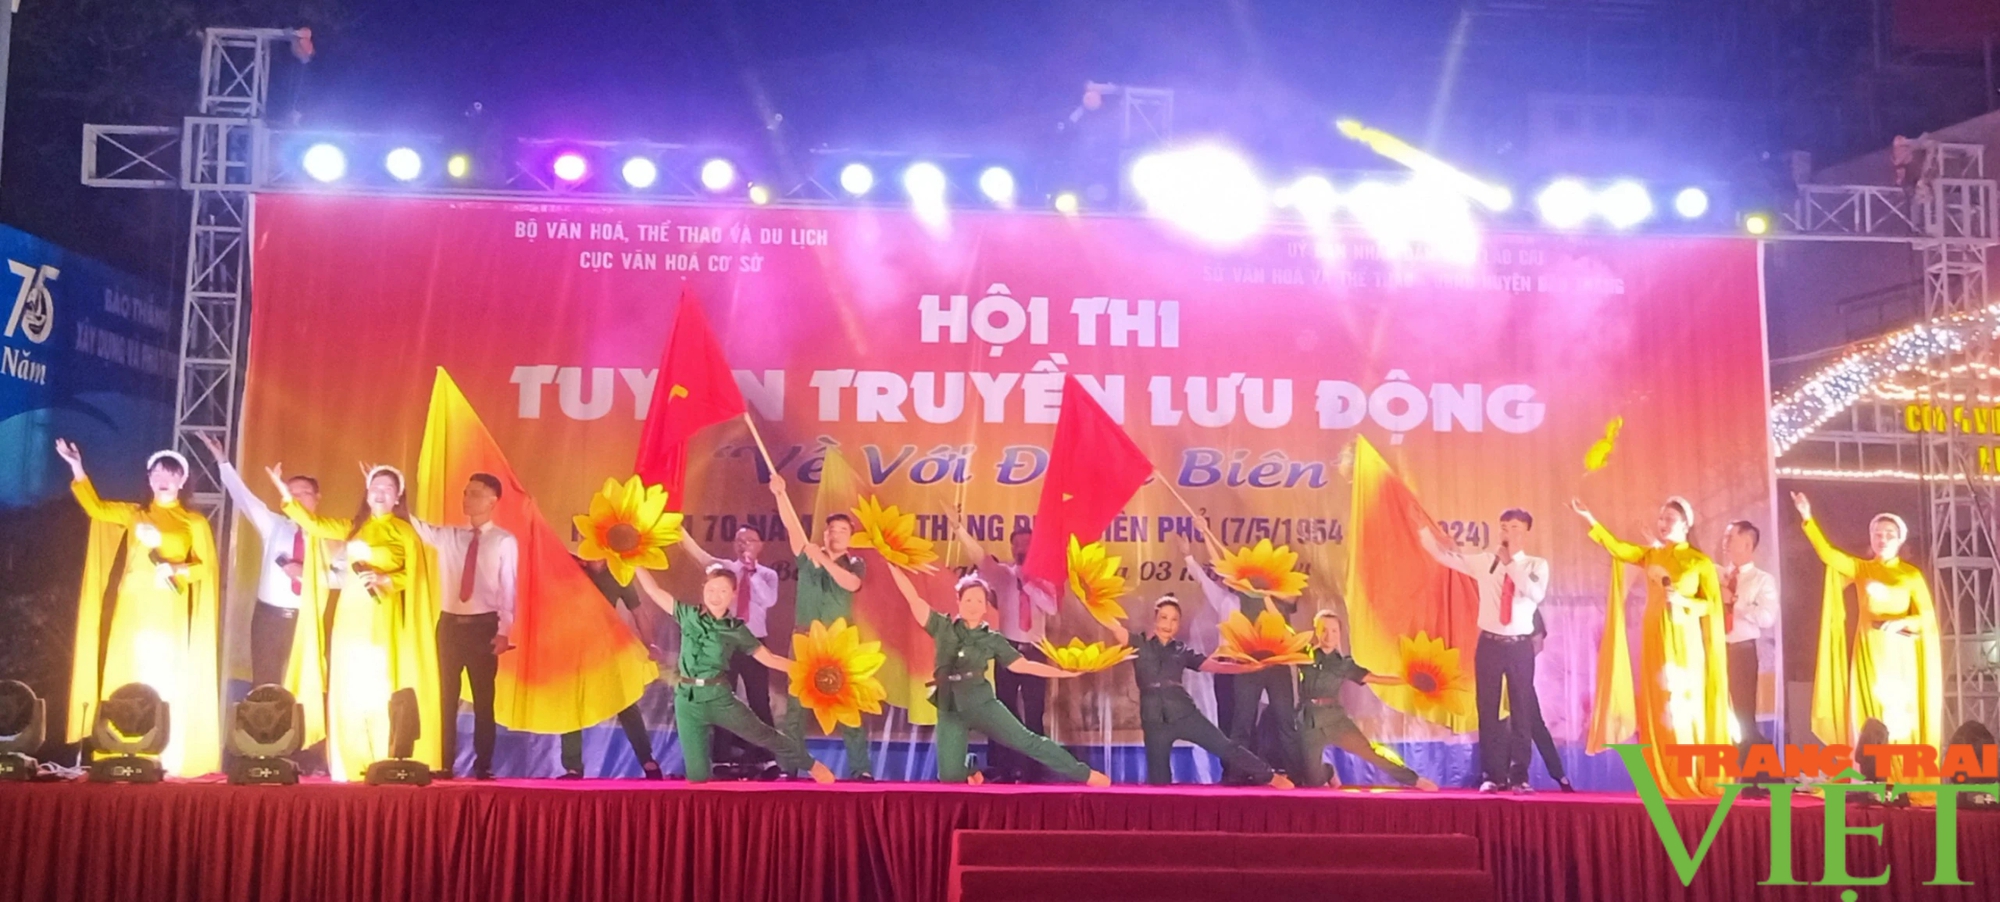 Tưng bừng hội thi "Về với Điện Biên" ở một huyện của Lào Cai, thu hút hàng nghìn khán giả- Ảnh 4.